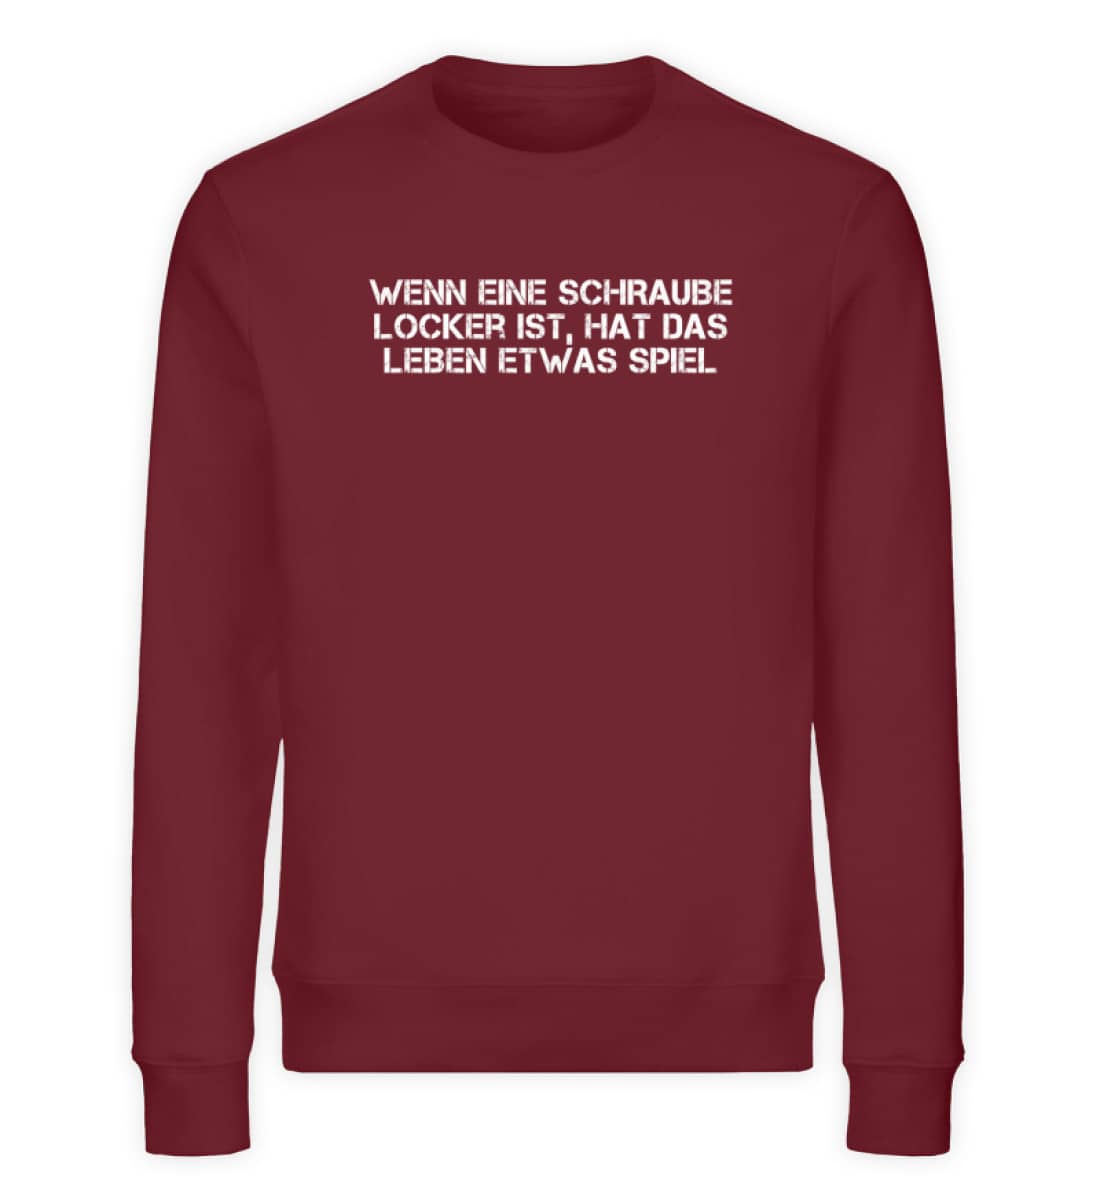 Schraube locker - Unisex Organic Sweatshirt-6883